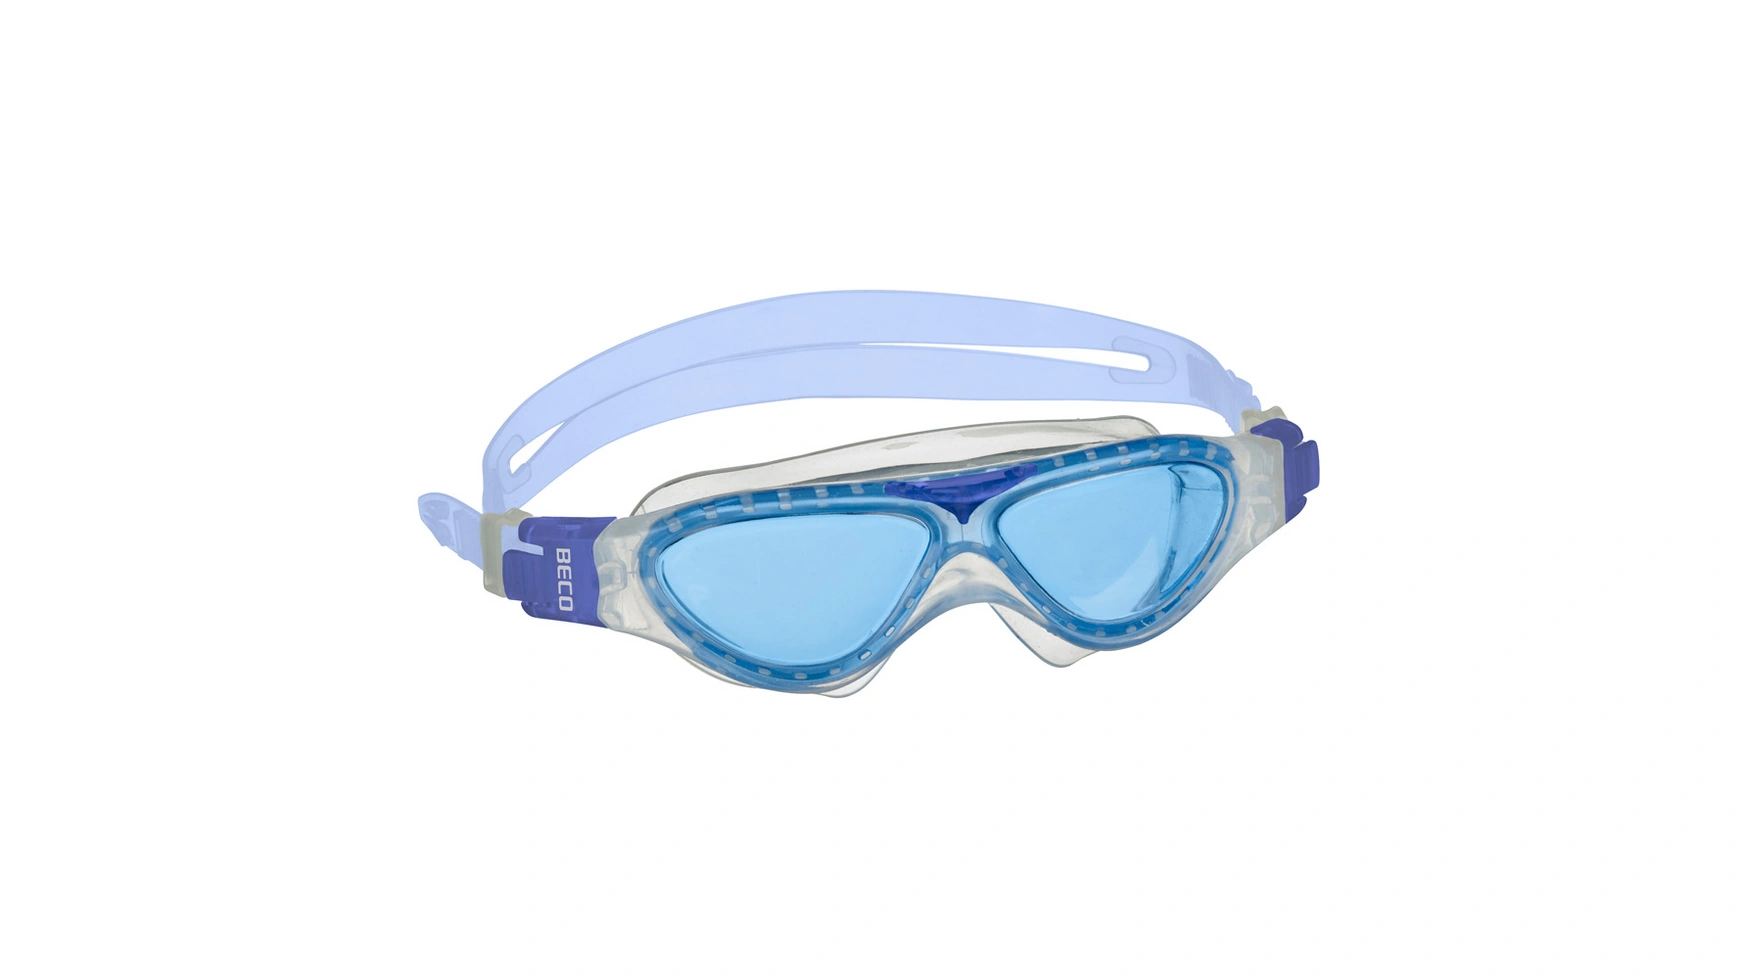 Beco Детские очки для плавания Panorama TOULON 8+ очки для плавания детские очки для плавания прямые продажи с завода водонепроницаемые противотуманные детские силиконовые очки очки